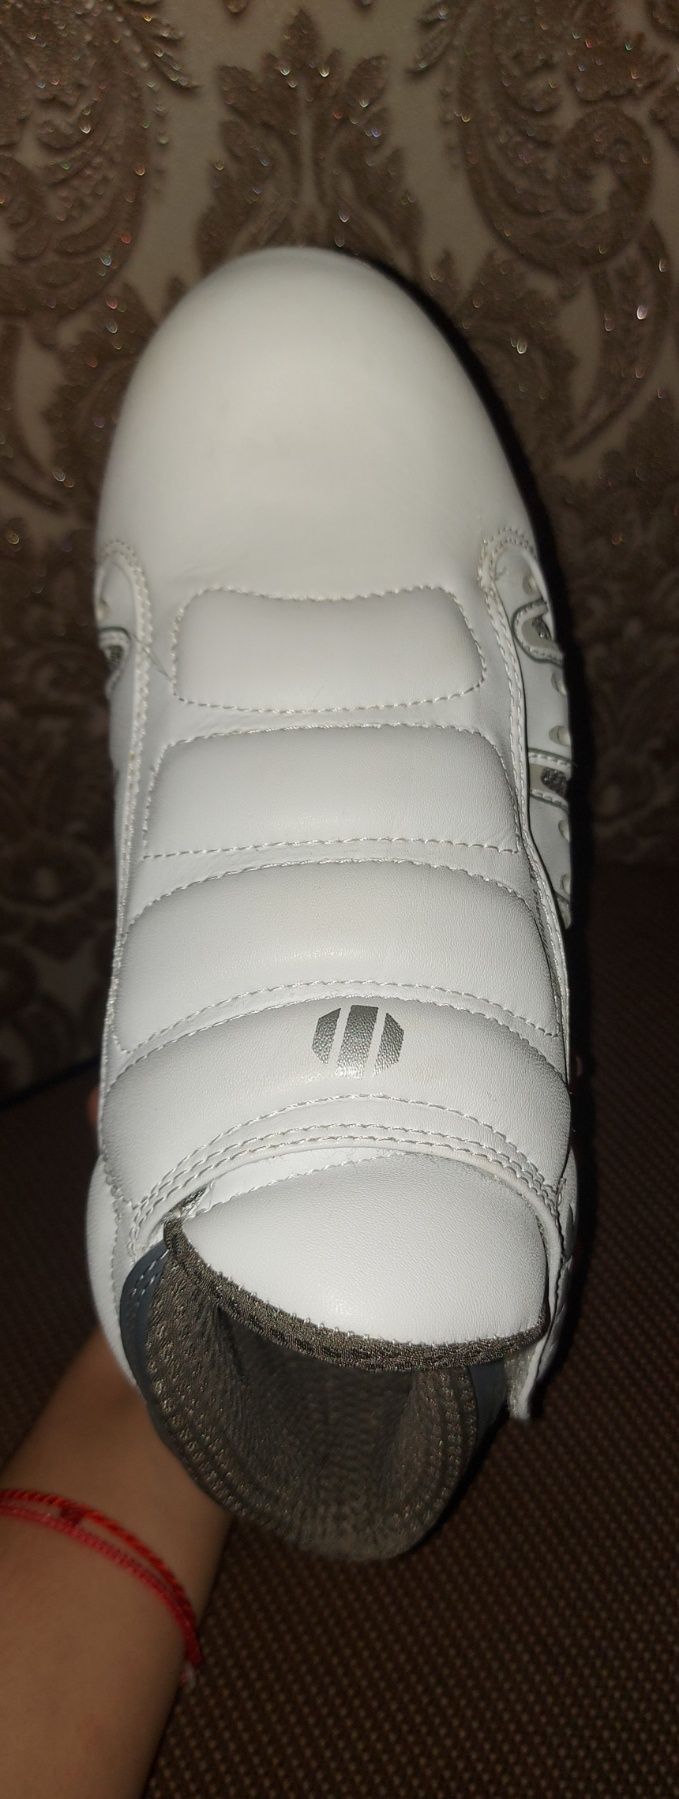 Защитная  обувь для актогона UFC, MMA,  размер 39.5, стелька 25см !!!